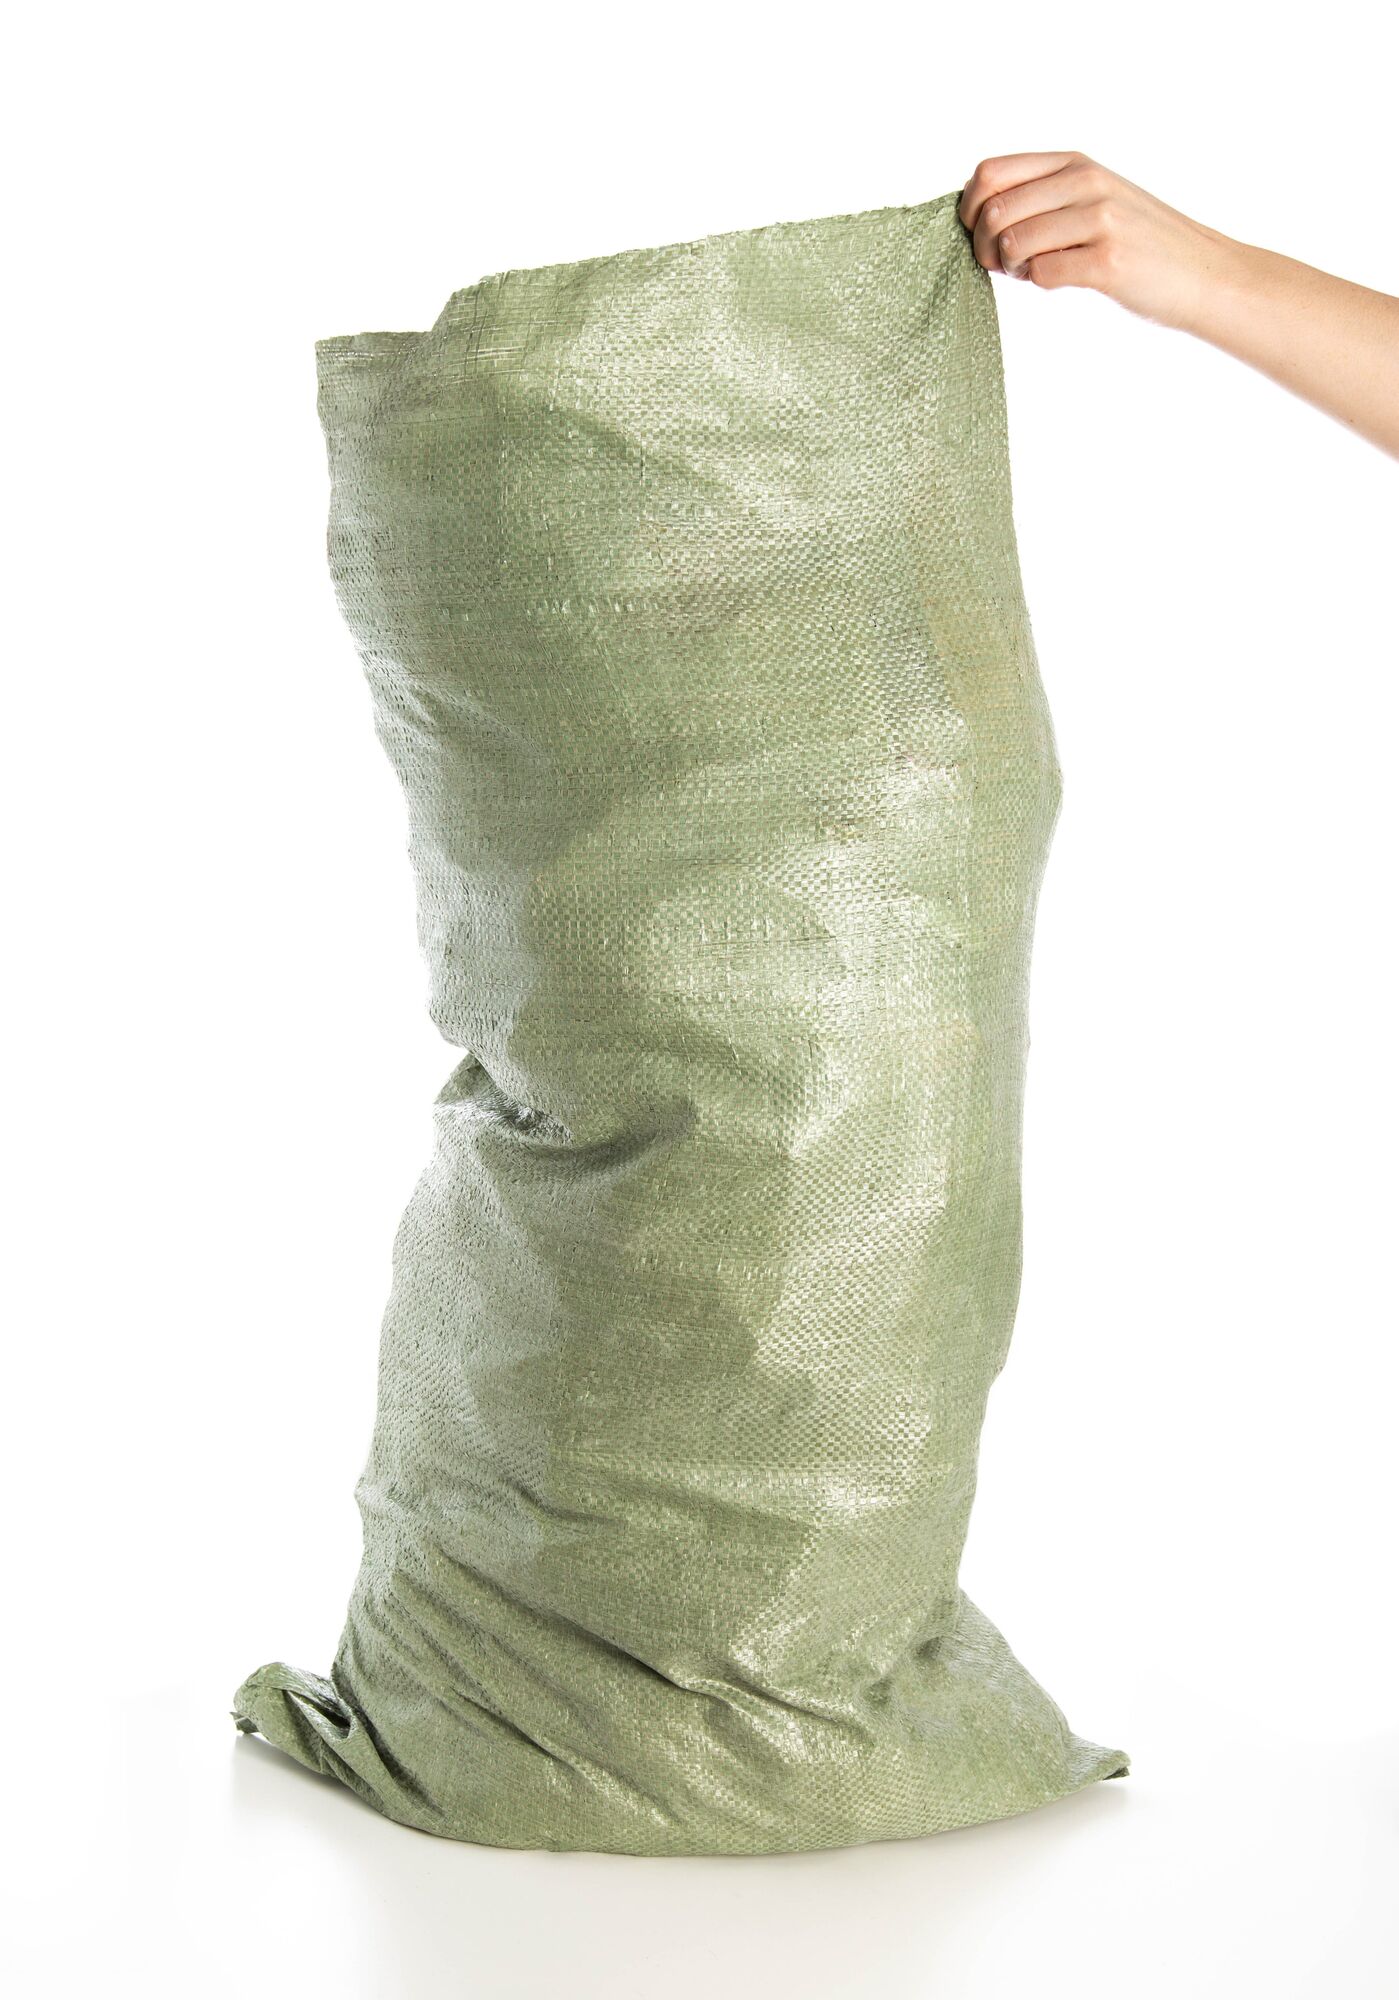 Мешок полипропиленовый зеленый 55х95, комплект 50 шт